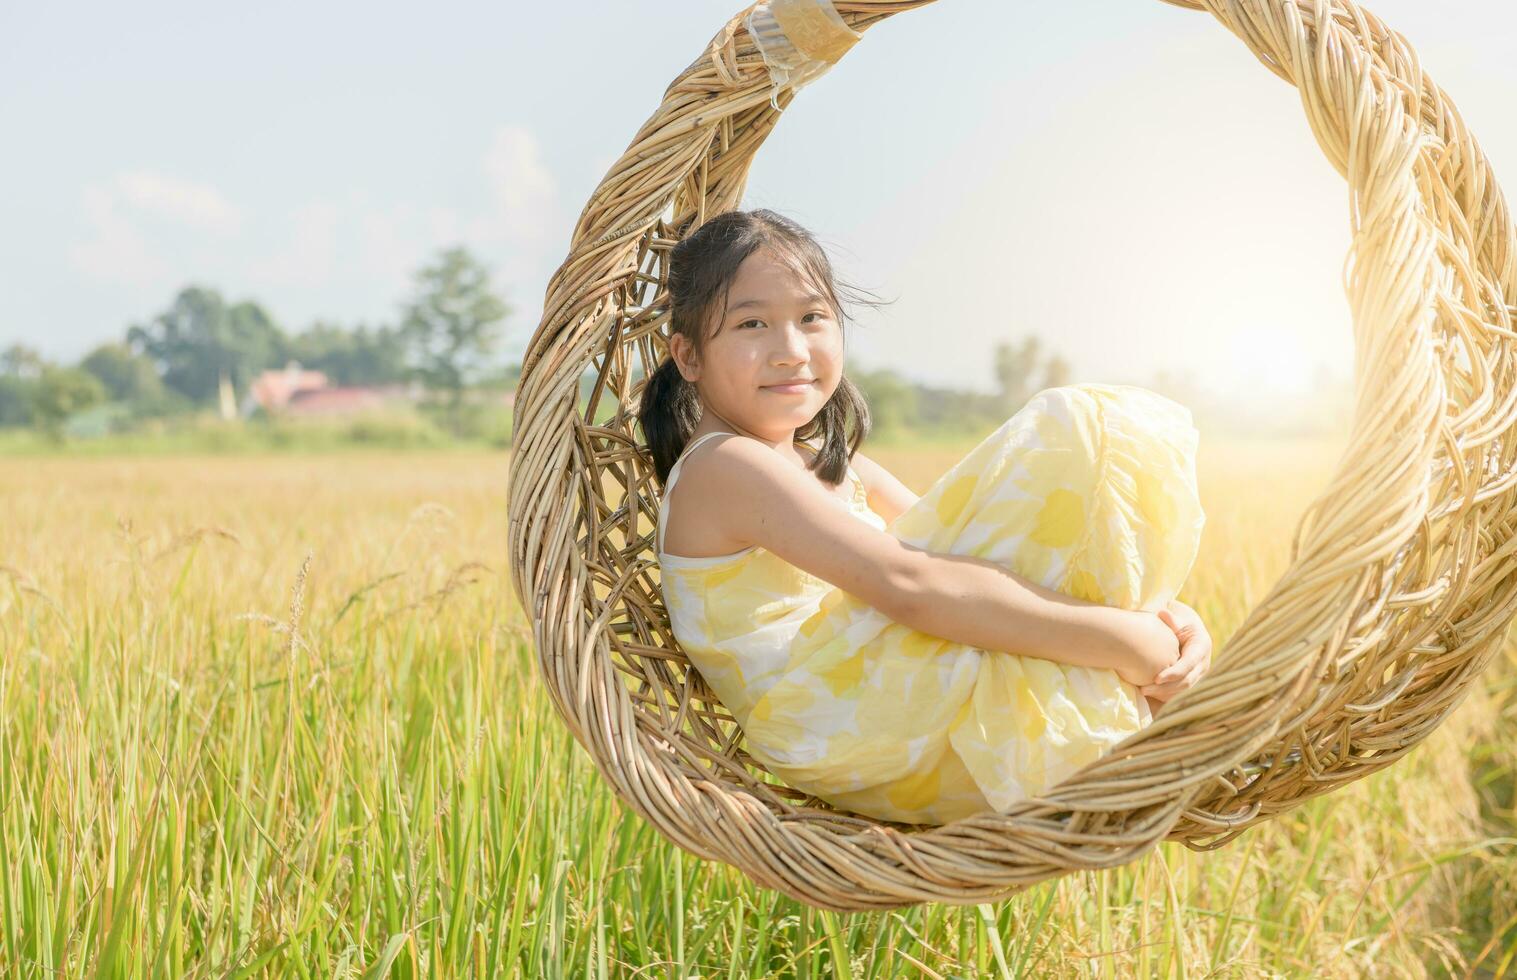 contento niña se sienta en mimbre columpio entre el dorado arroz campos. foto